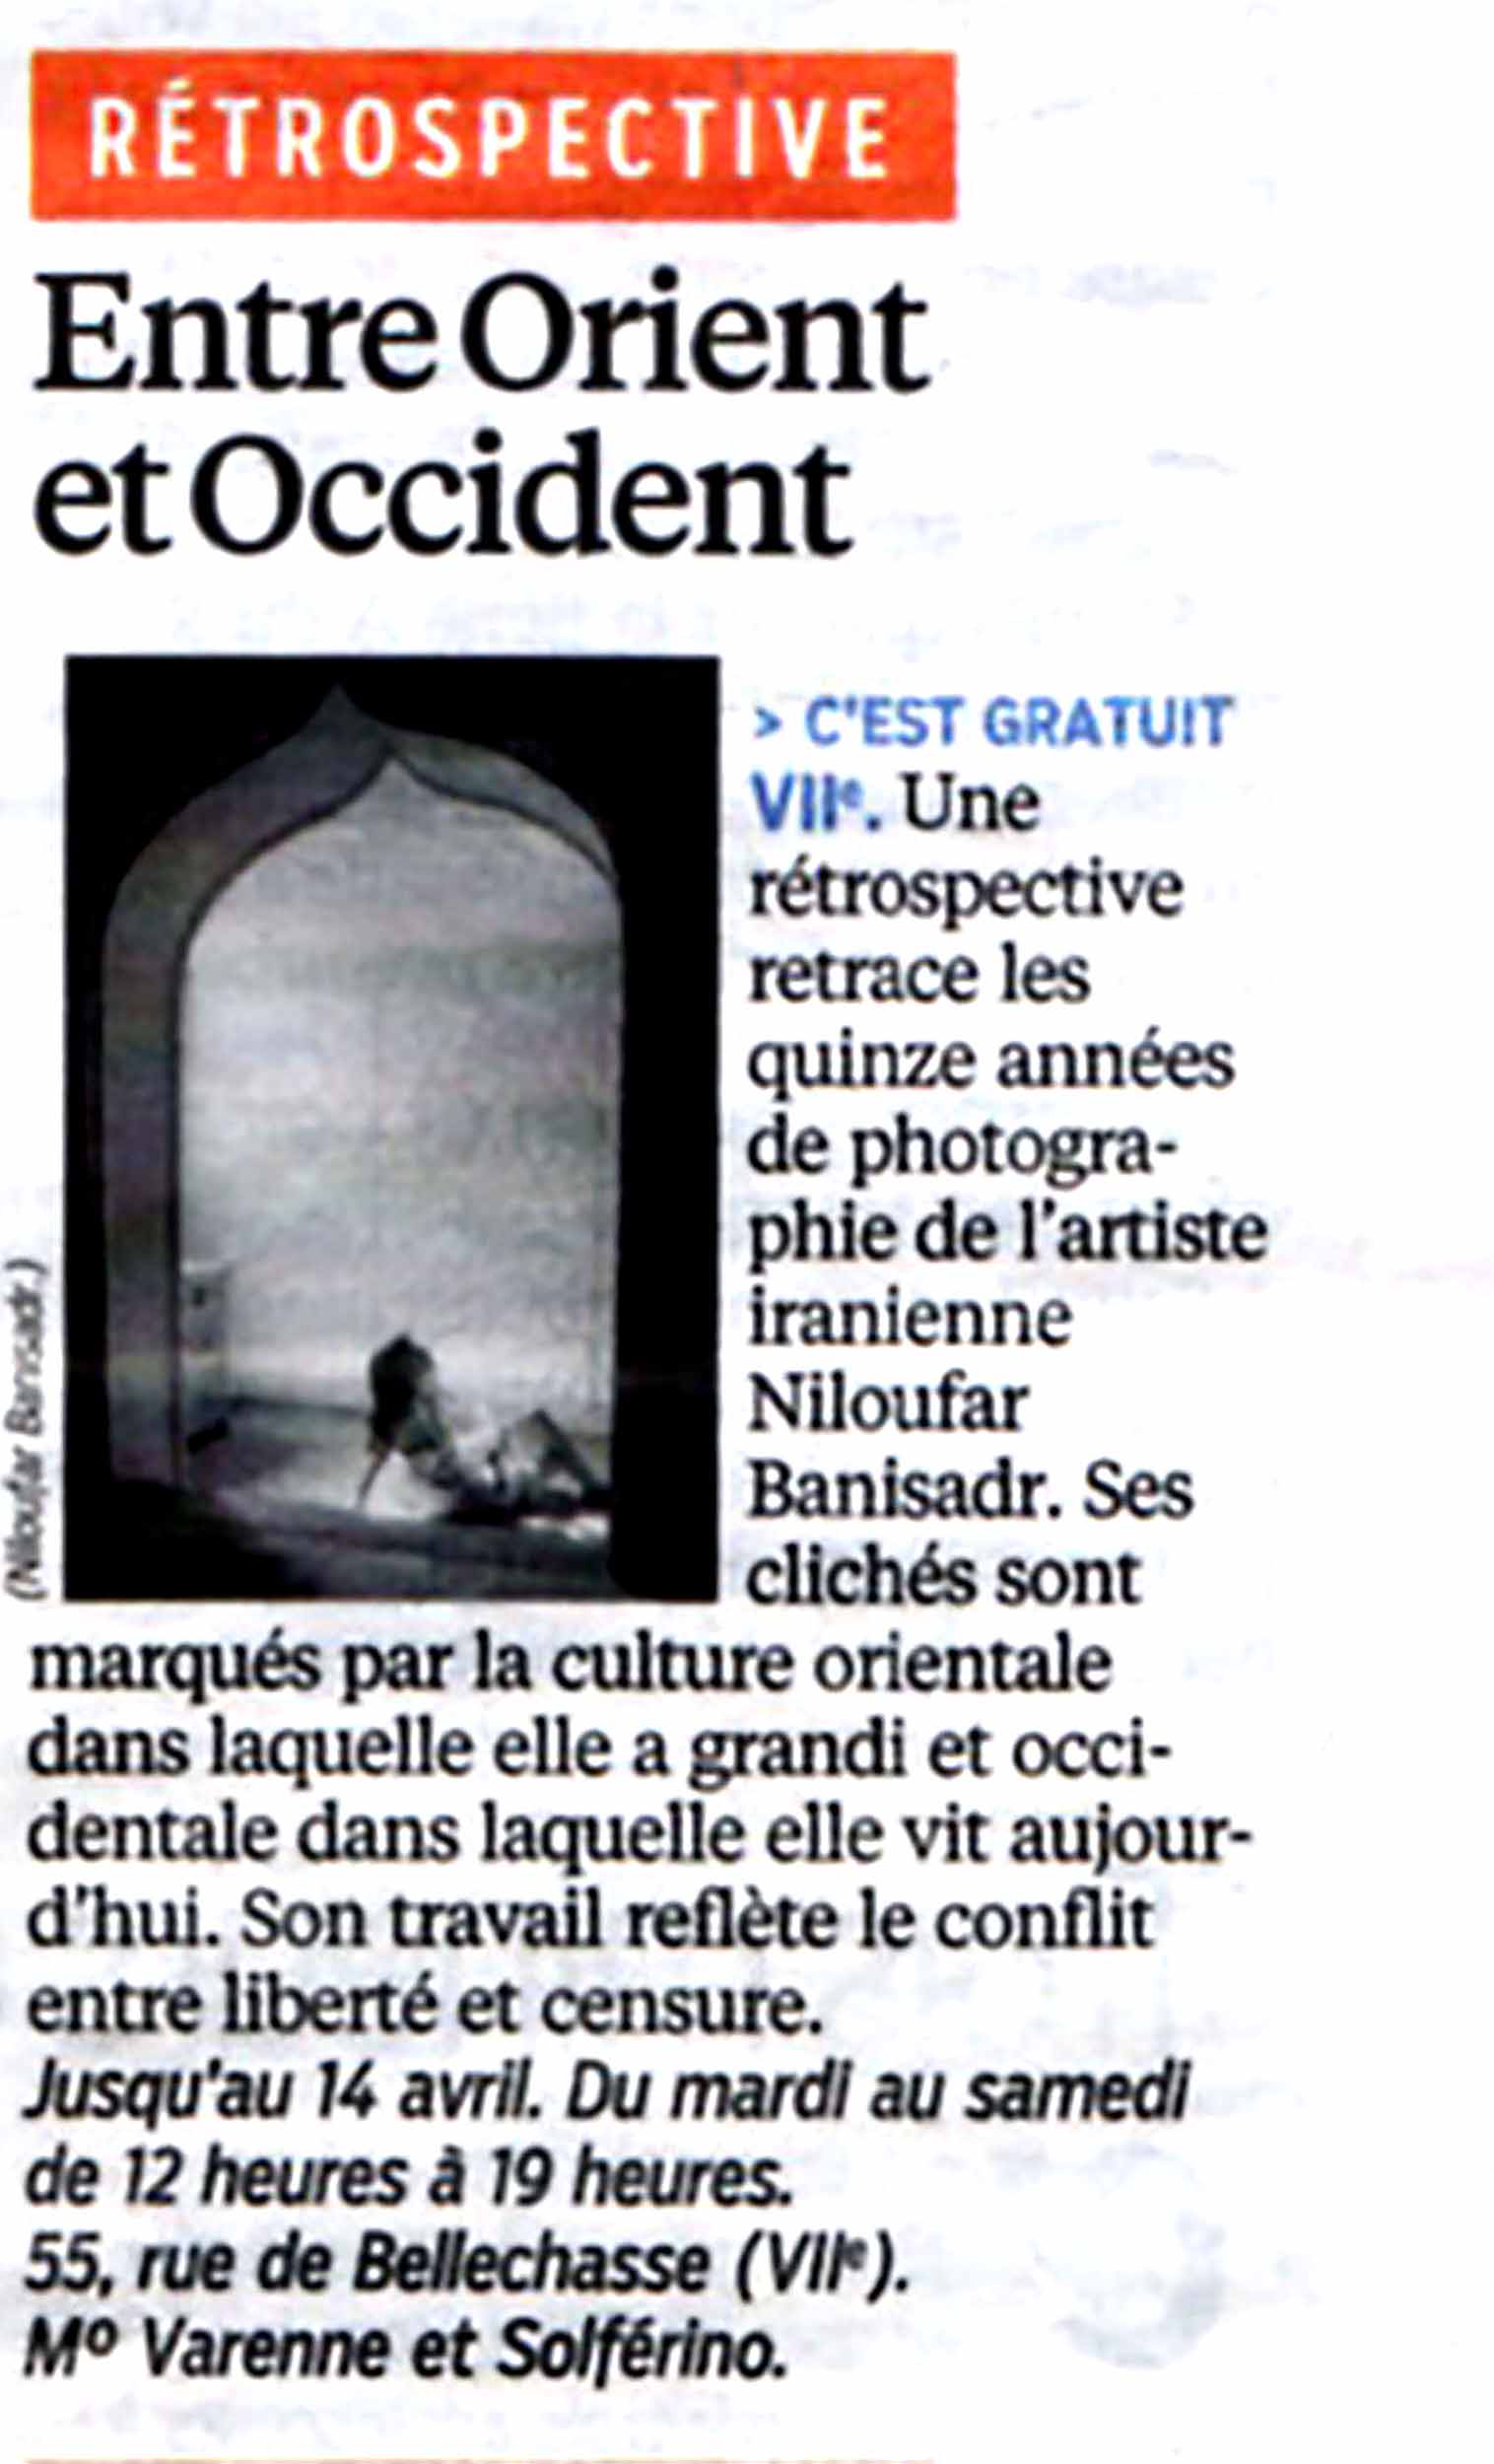 Niloufar Banisadr press article on Le Parisien